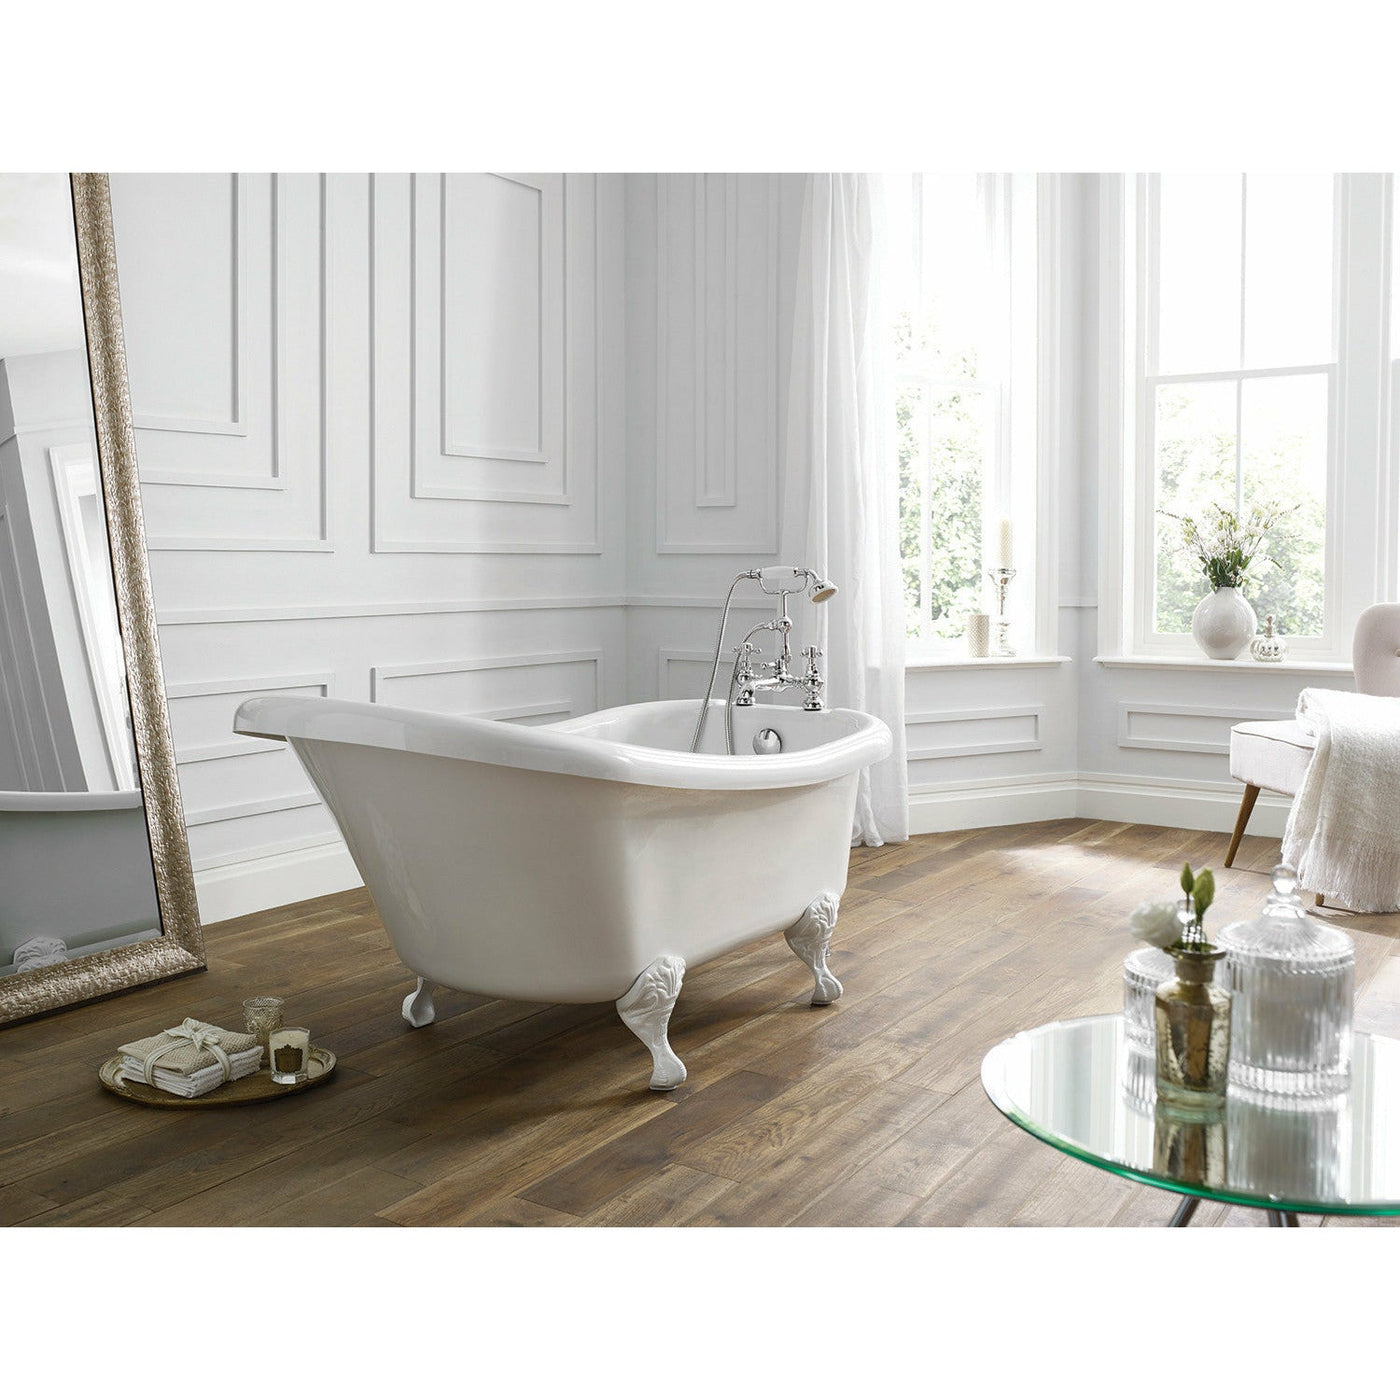 Frontline White Camden Traditional Freestanding Slipper Bath - White - Letta London - 